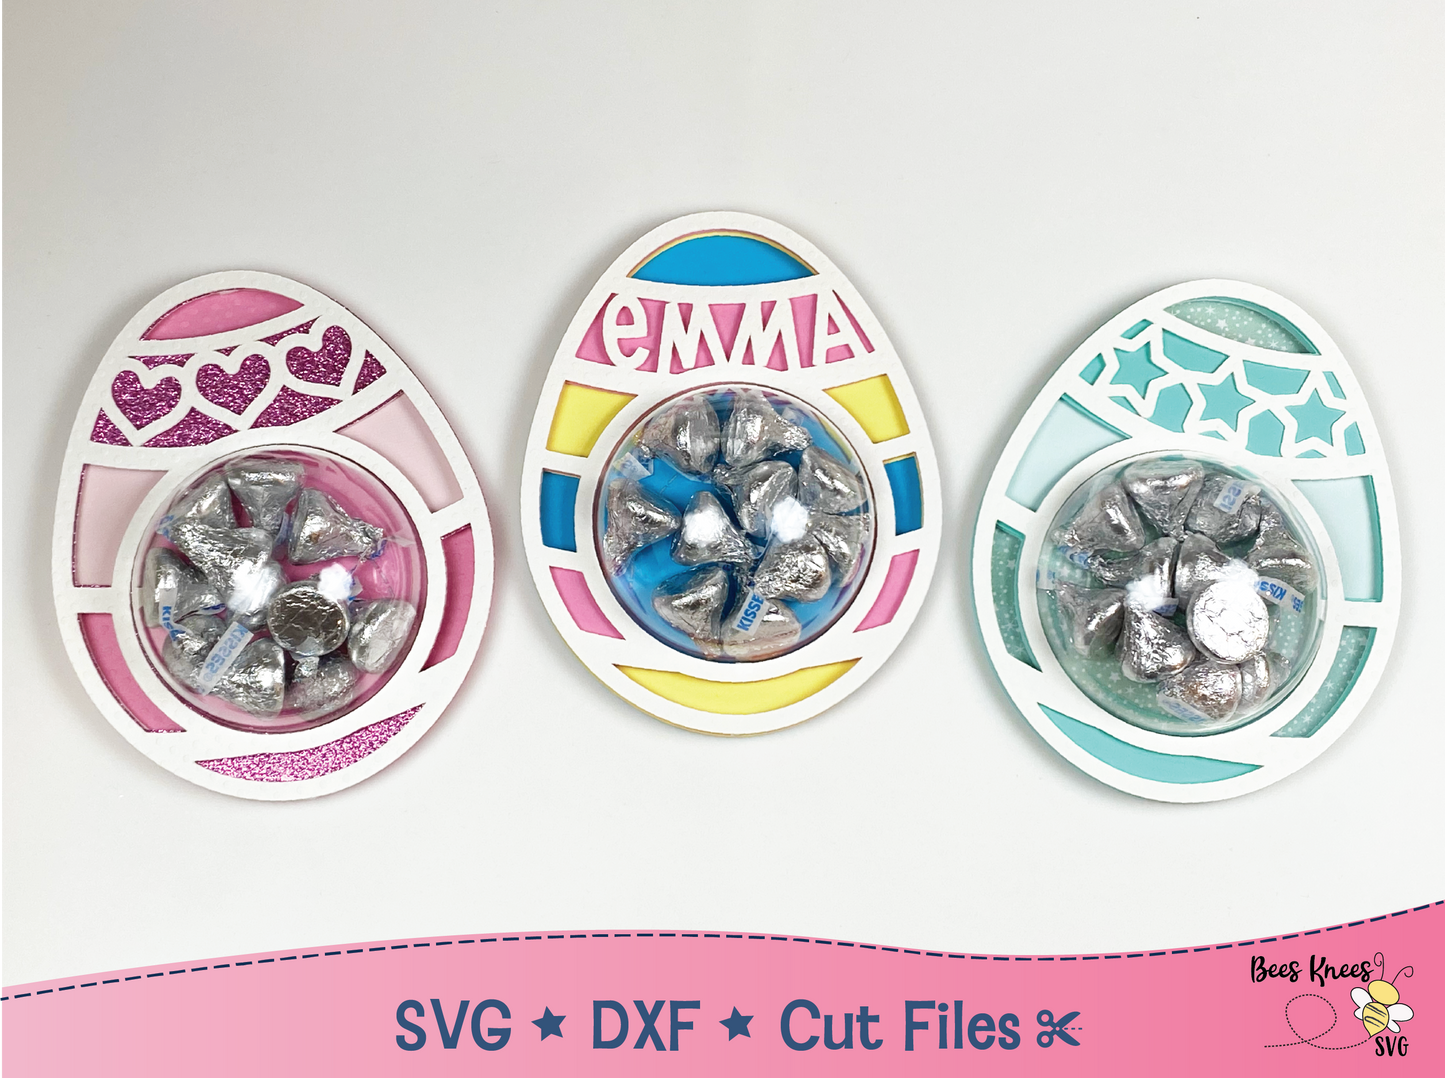 Easter Dome Candy Holder SVG Bundle